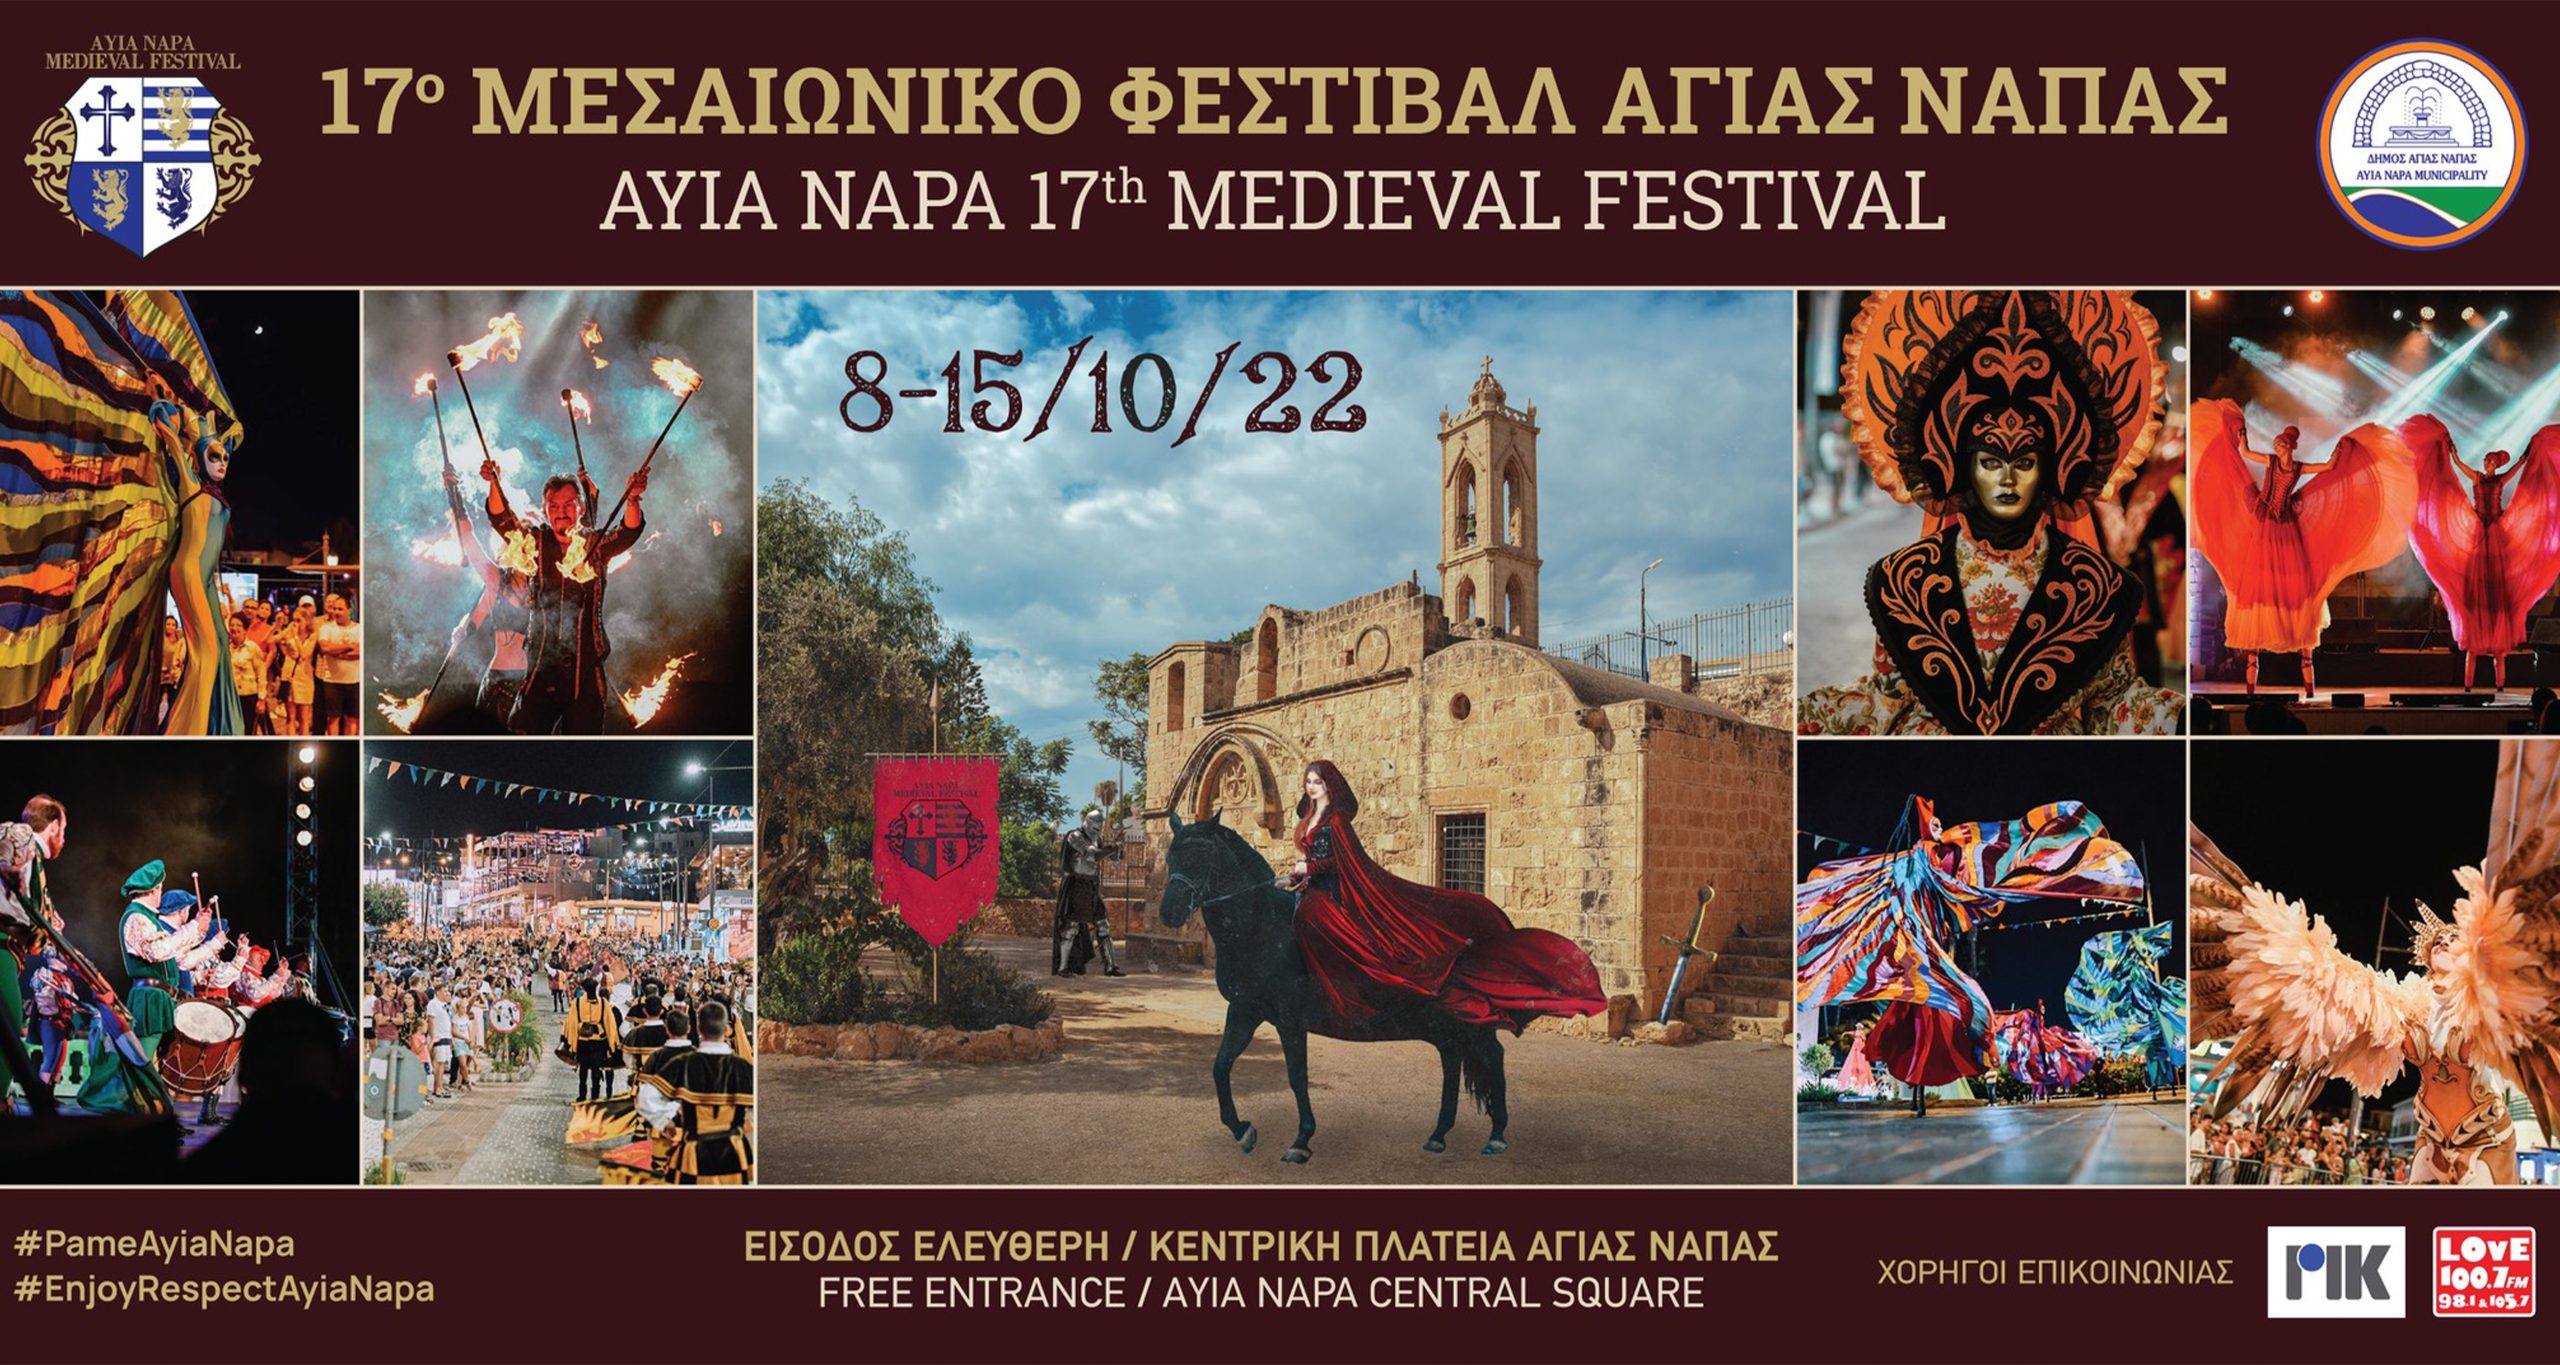 17ο Μεσαιωνικό Φεστιβάλ Αγίας Νάπας: H σπουδαία καλλιτεχνική Εκδήλωση είναι εδώ και το ταξίδι στην Μεσαιωνική Εποχή αρχίζει το Σάββατο 08 Οκτωβρίου 2022